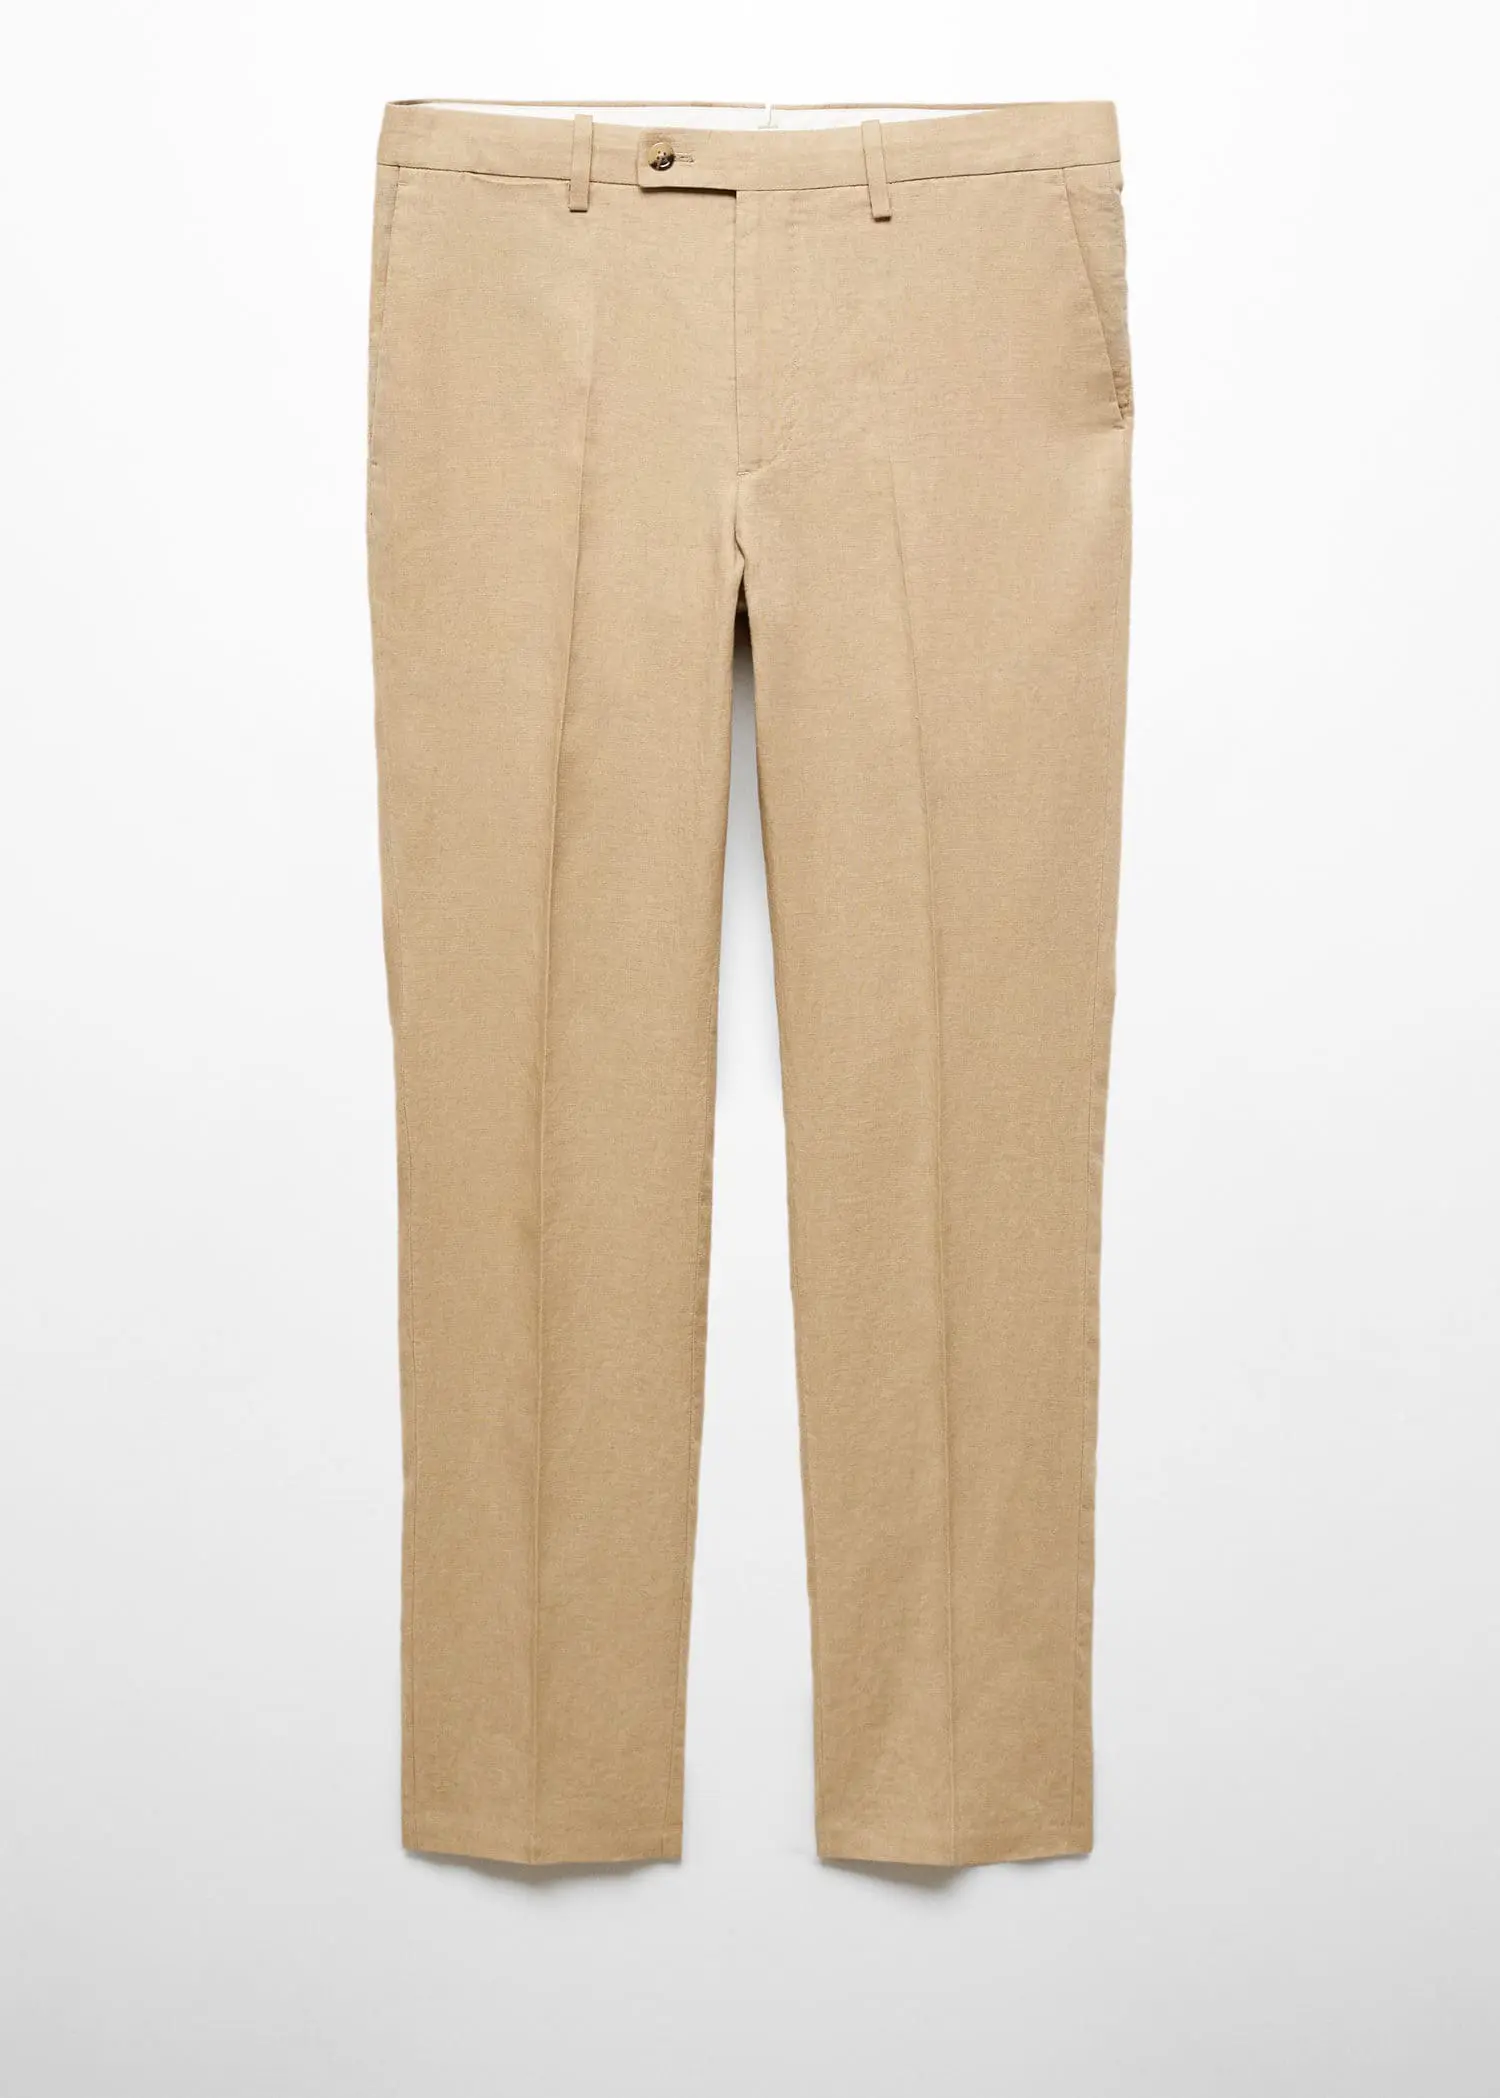 Mango 100% linen suit trousers. 1